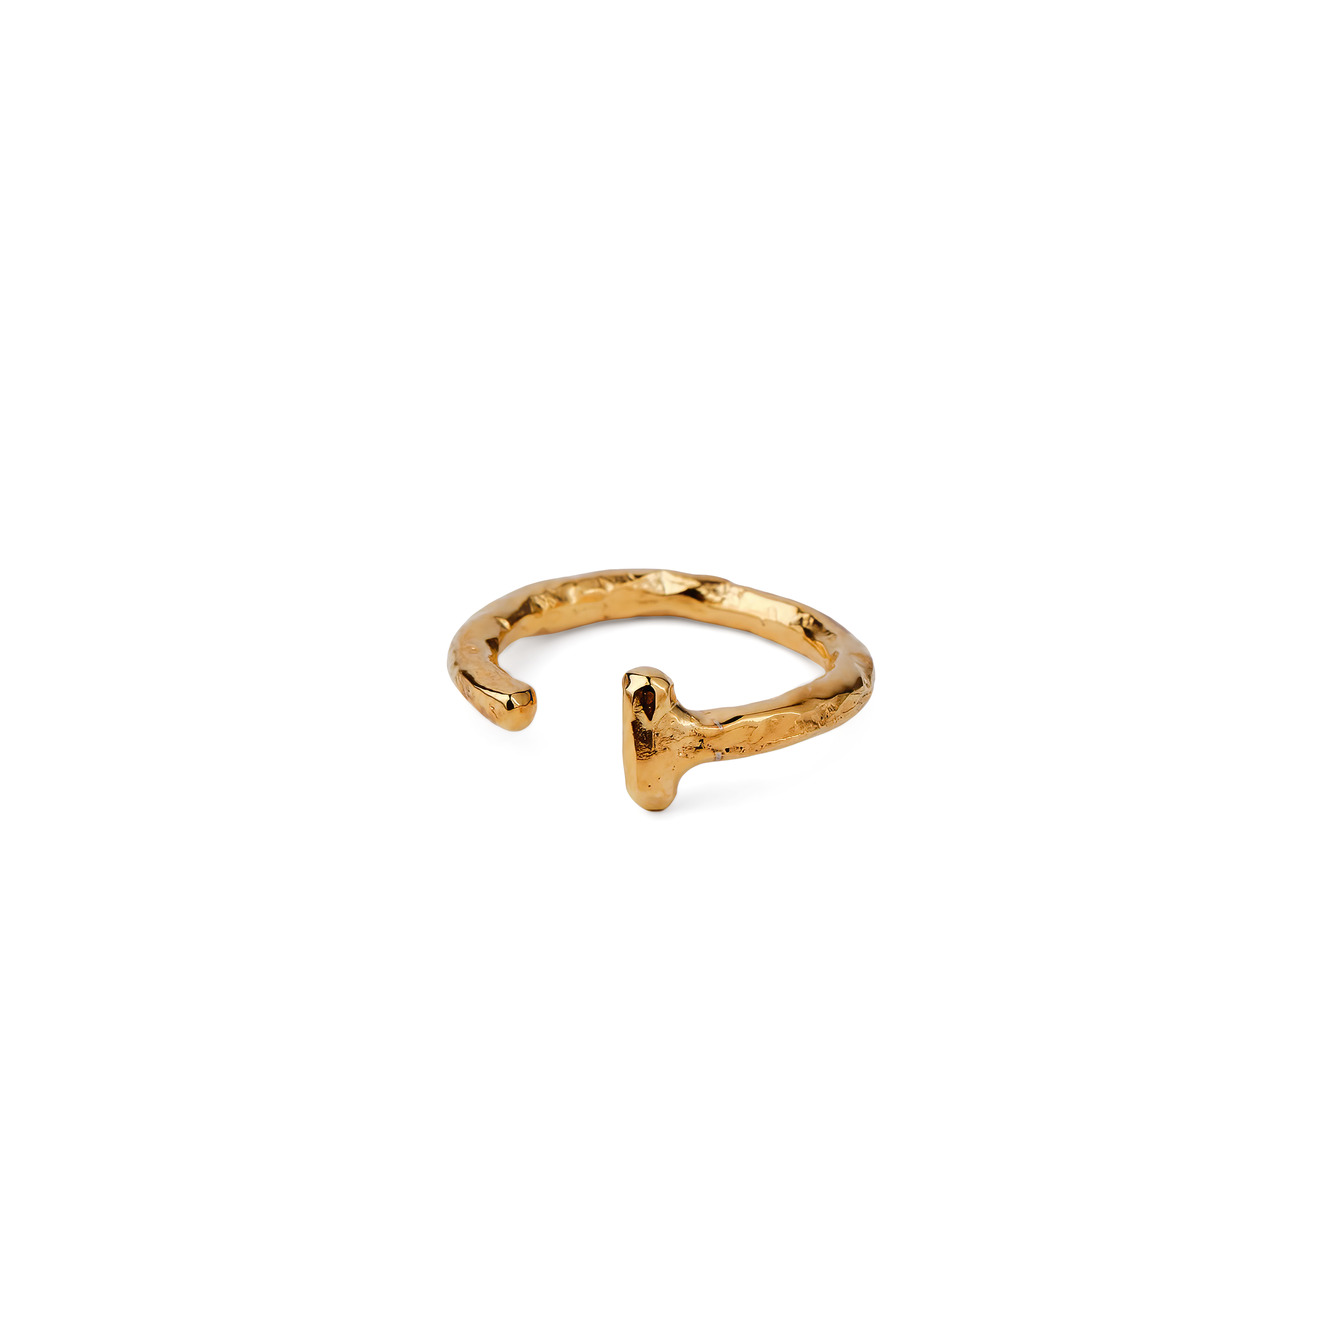 Sevenworlds Позолоченное кольцо Nola из бронзы sevenworlds позолоченное кольцо печатка pharaoh из серебра